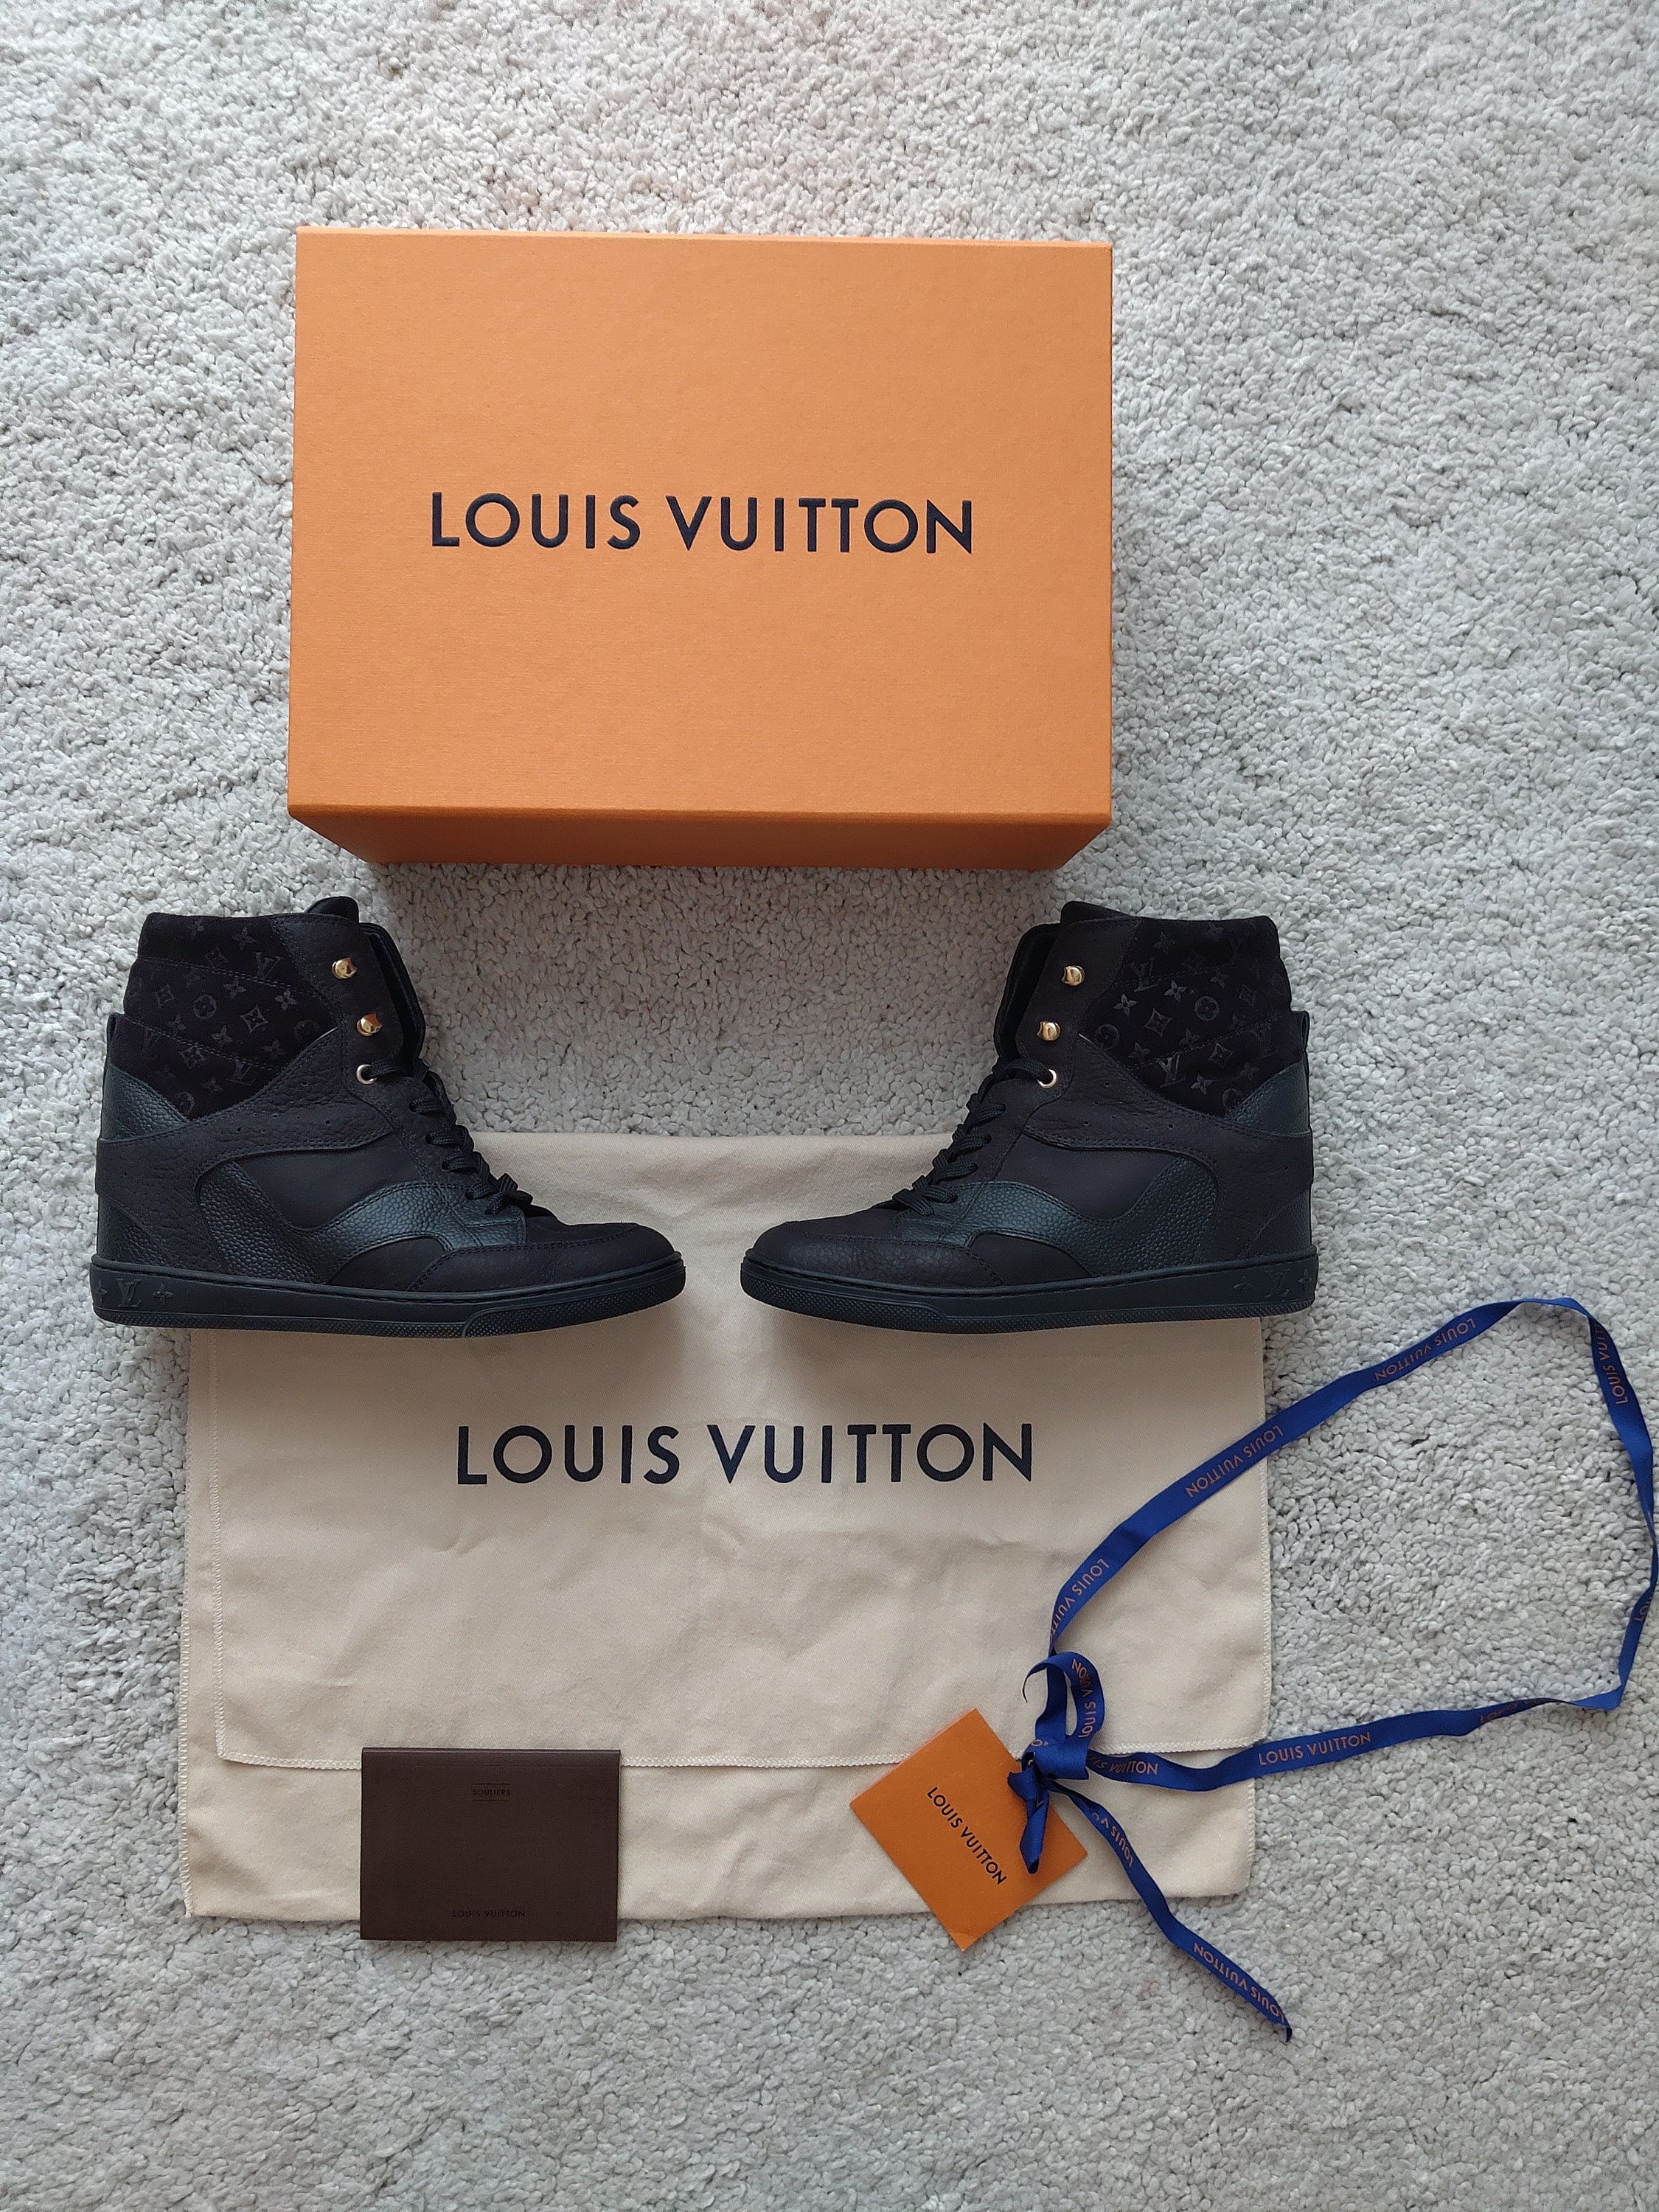 Louis Vuitton, Shoes, Louis Vuitton Cliff Top Sneaker